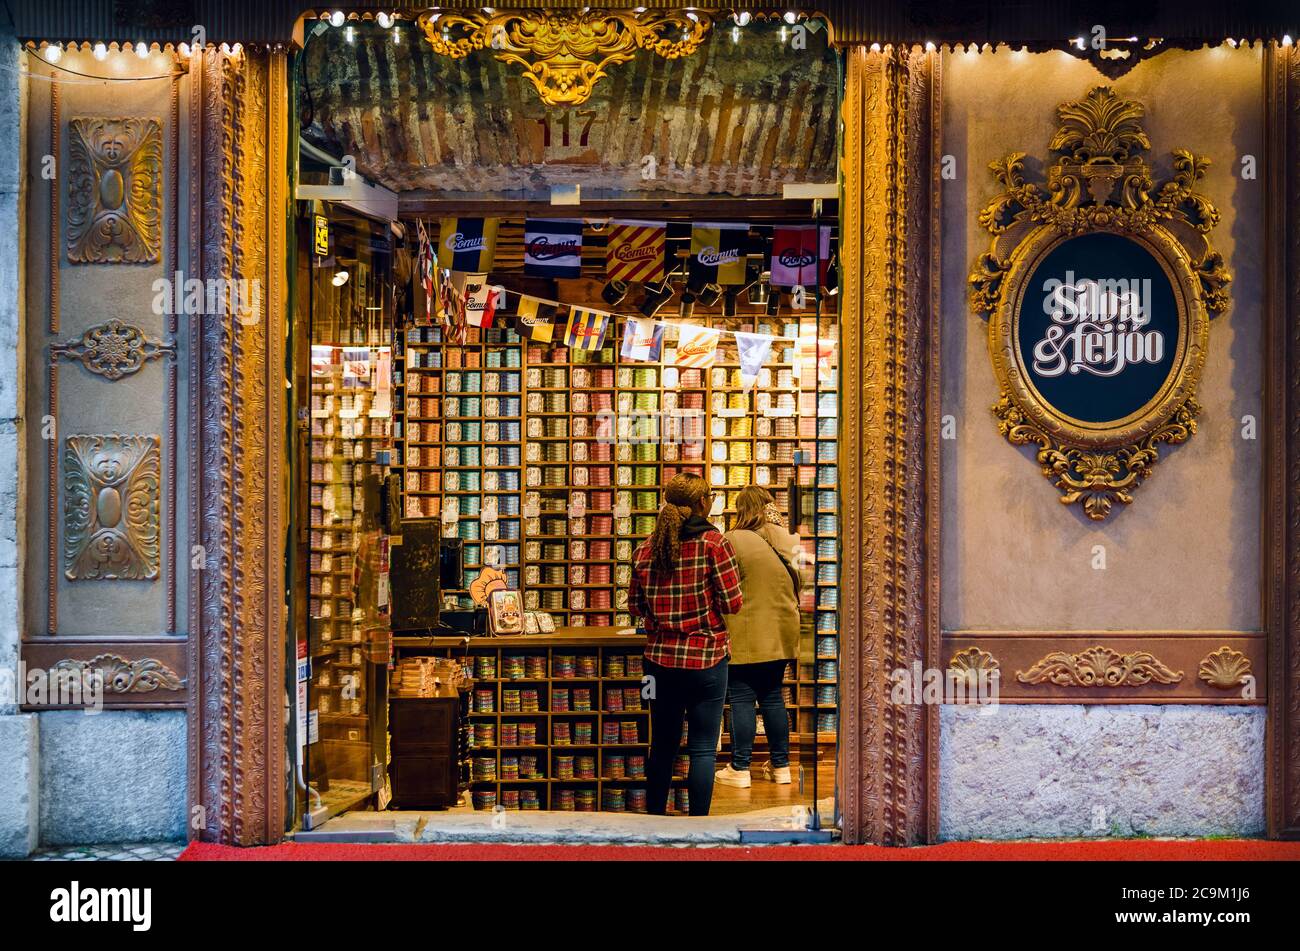 LISSABON, PORTUGAL - 2. FEBRUAR 2019: Old Silva und Feijoo Shop in Lissabon Innenstadt, portugal, sehr berühmte traditionelle portugiesische Gastronomie-Shop selli Stockfoto